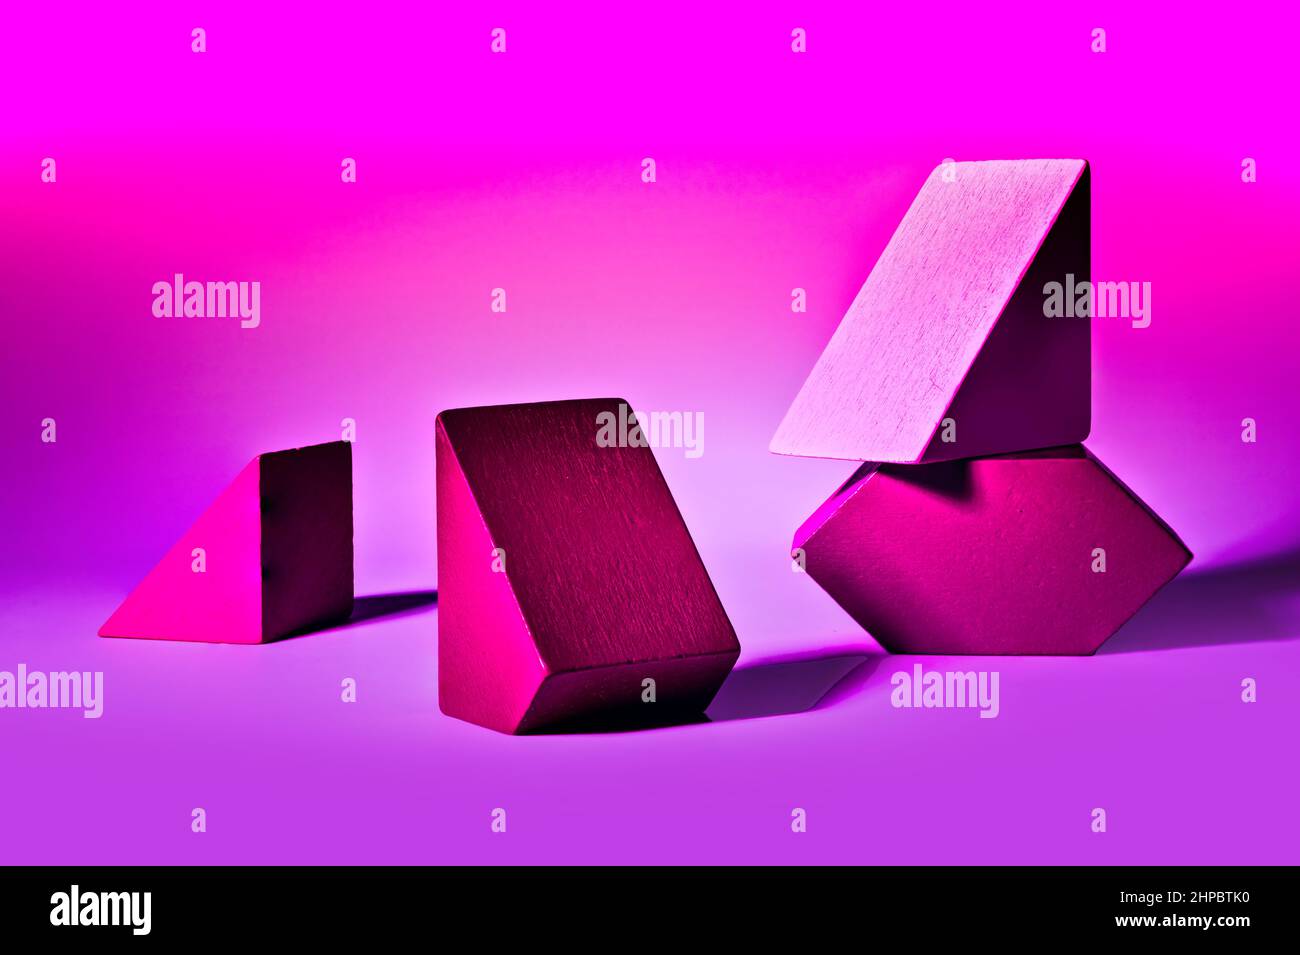 Disposición fría de bloques geométricos de forma diferente sobre fondo rosa Foto de stock